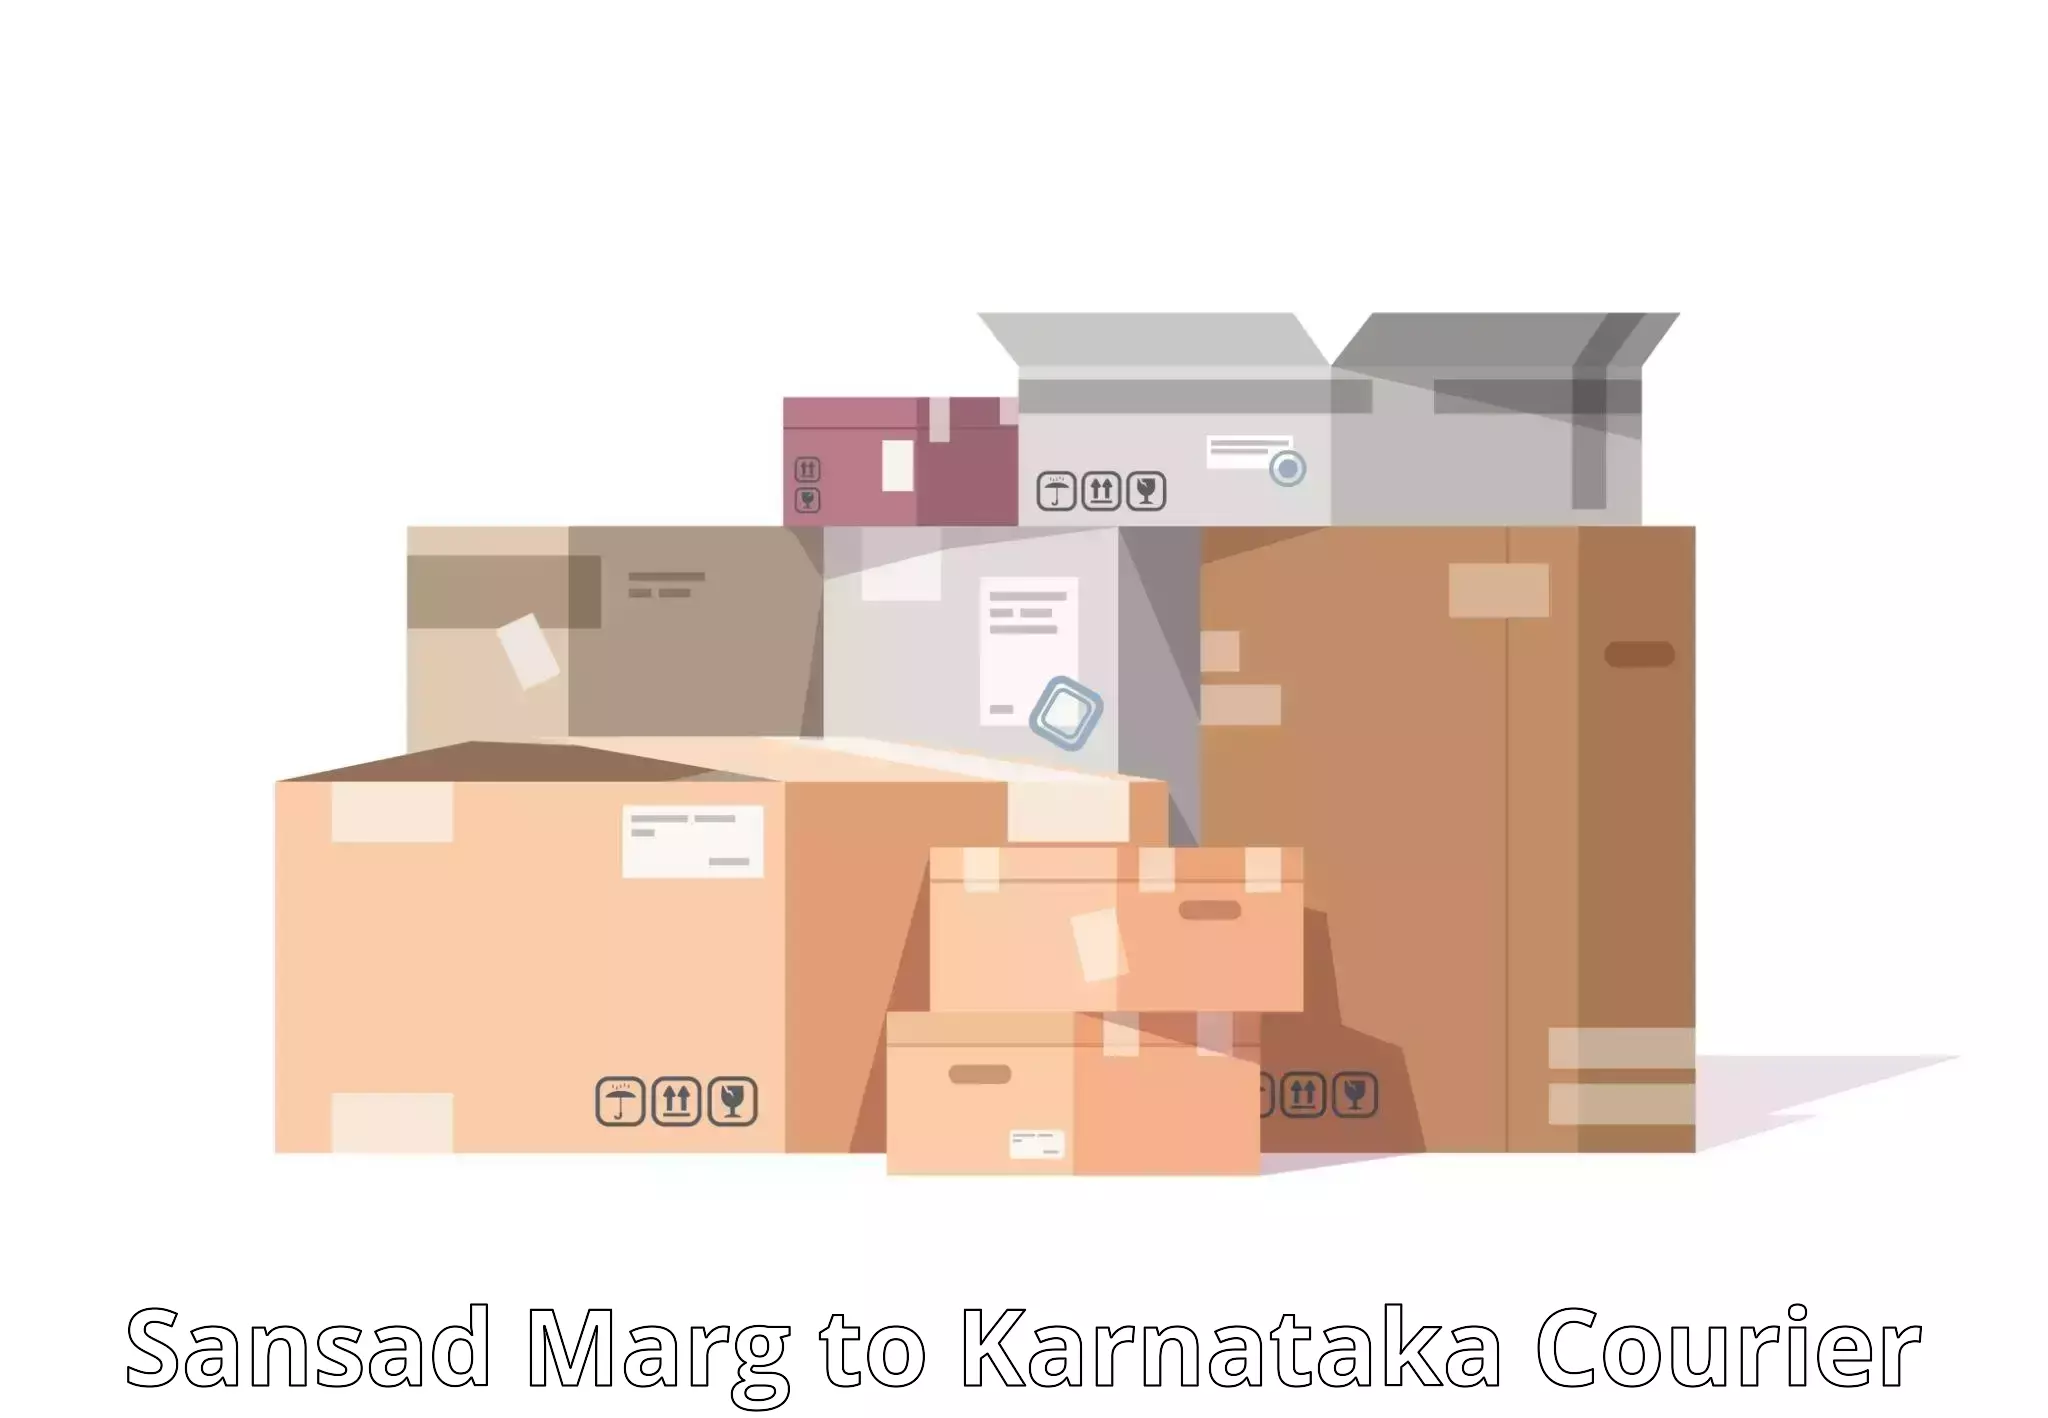 Express delivery capabilities Sansad Marg to Kundapura